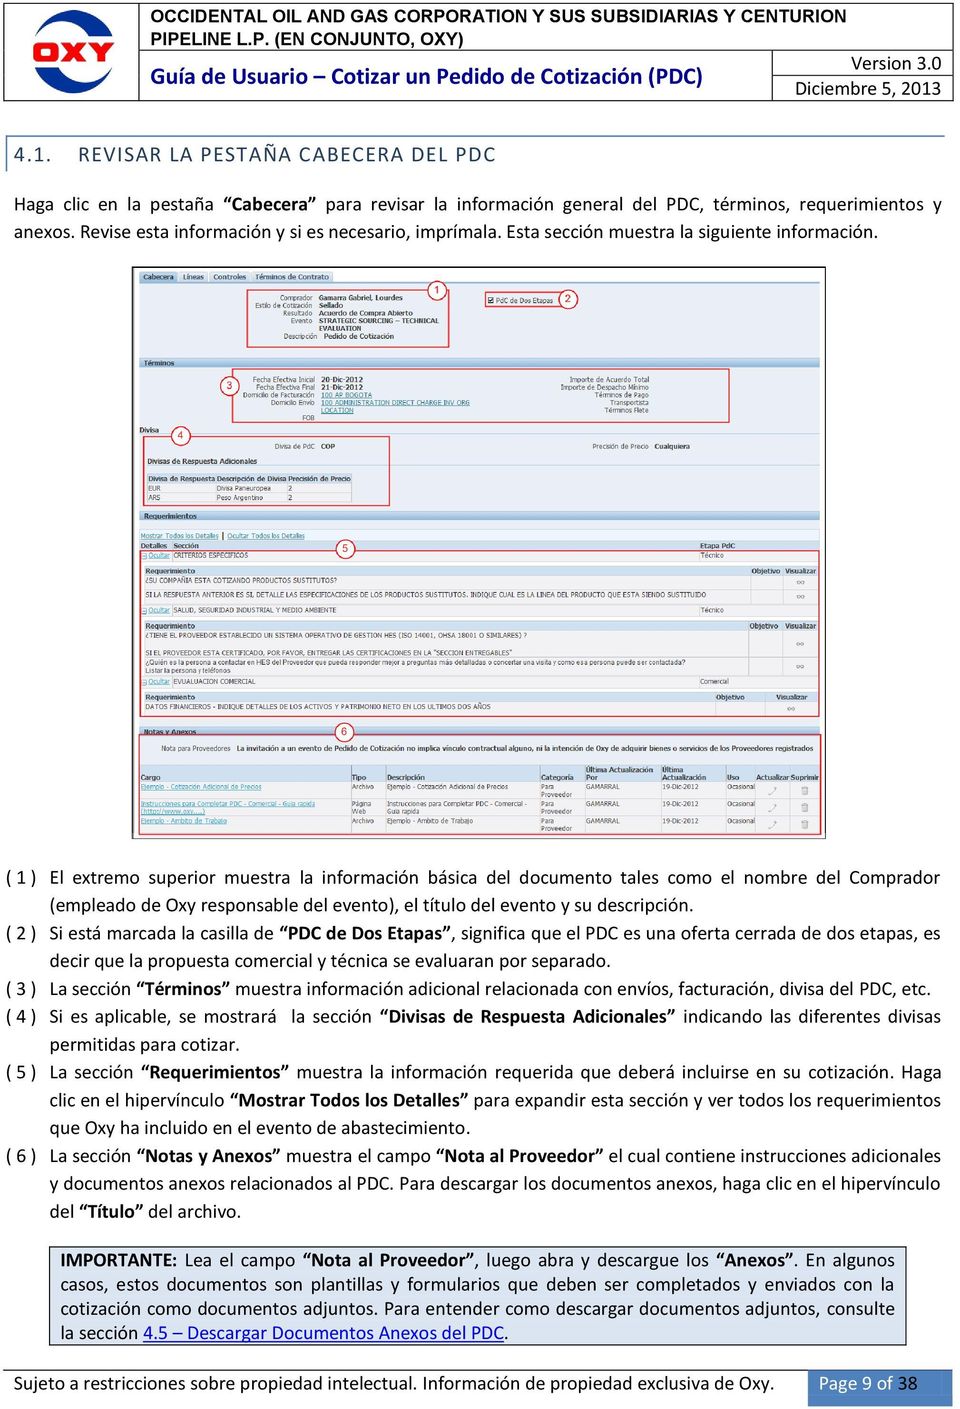 ( 1 ) El extremo superior muestra la información básica del documento tales como el nombre del Comprador (empleado de Oxy responsable del evento), el título del evento y su descripción.